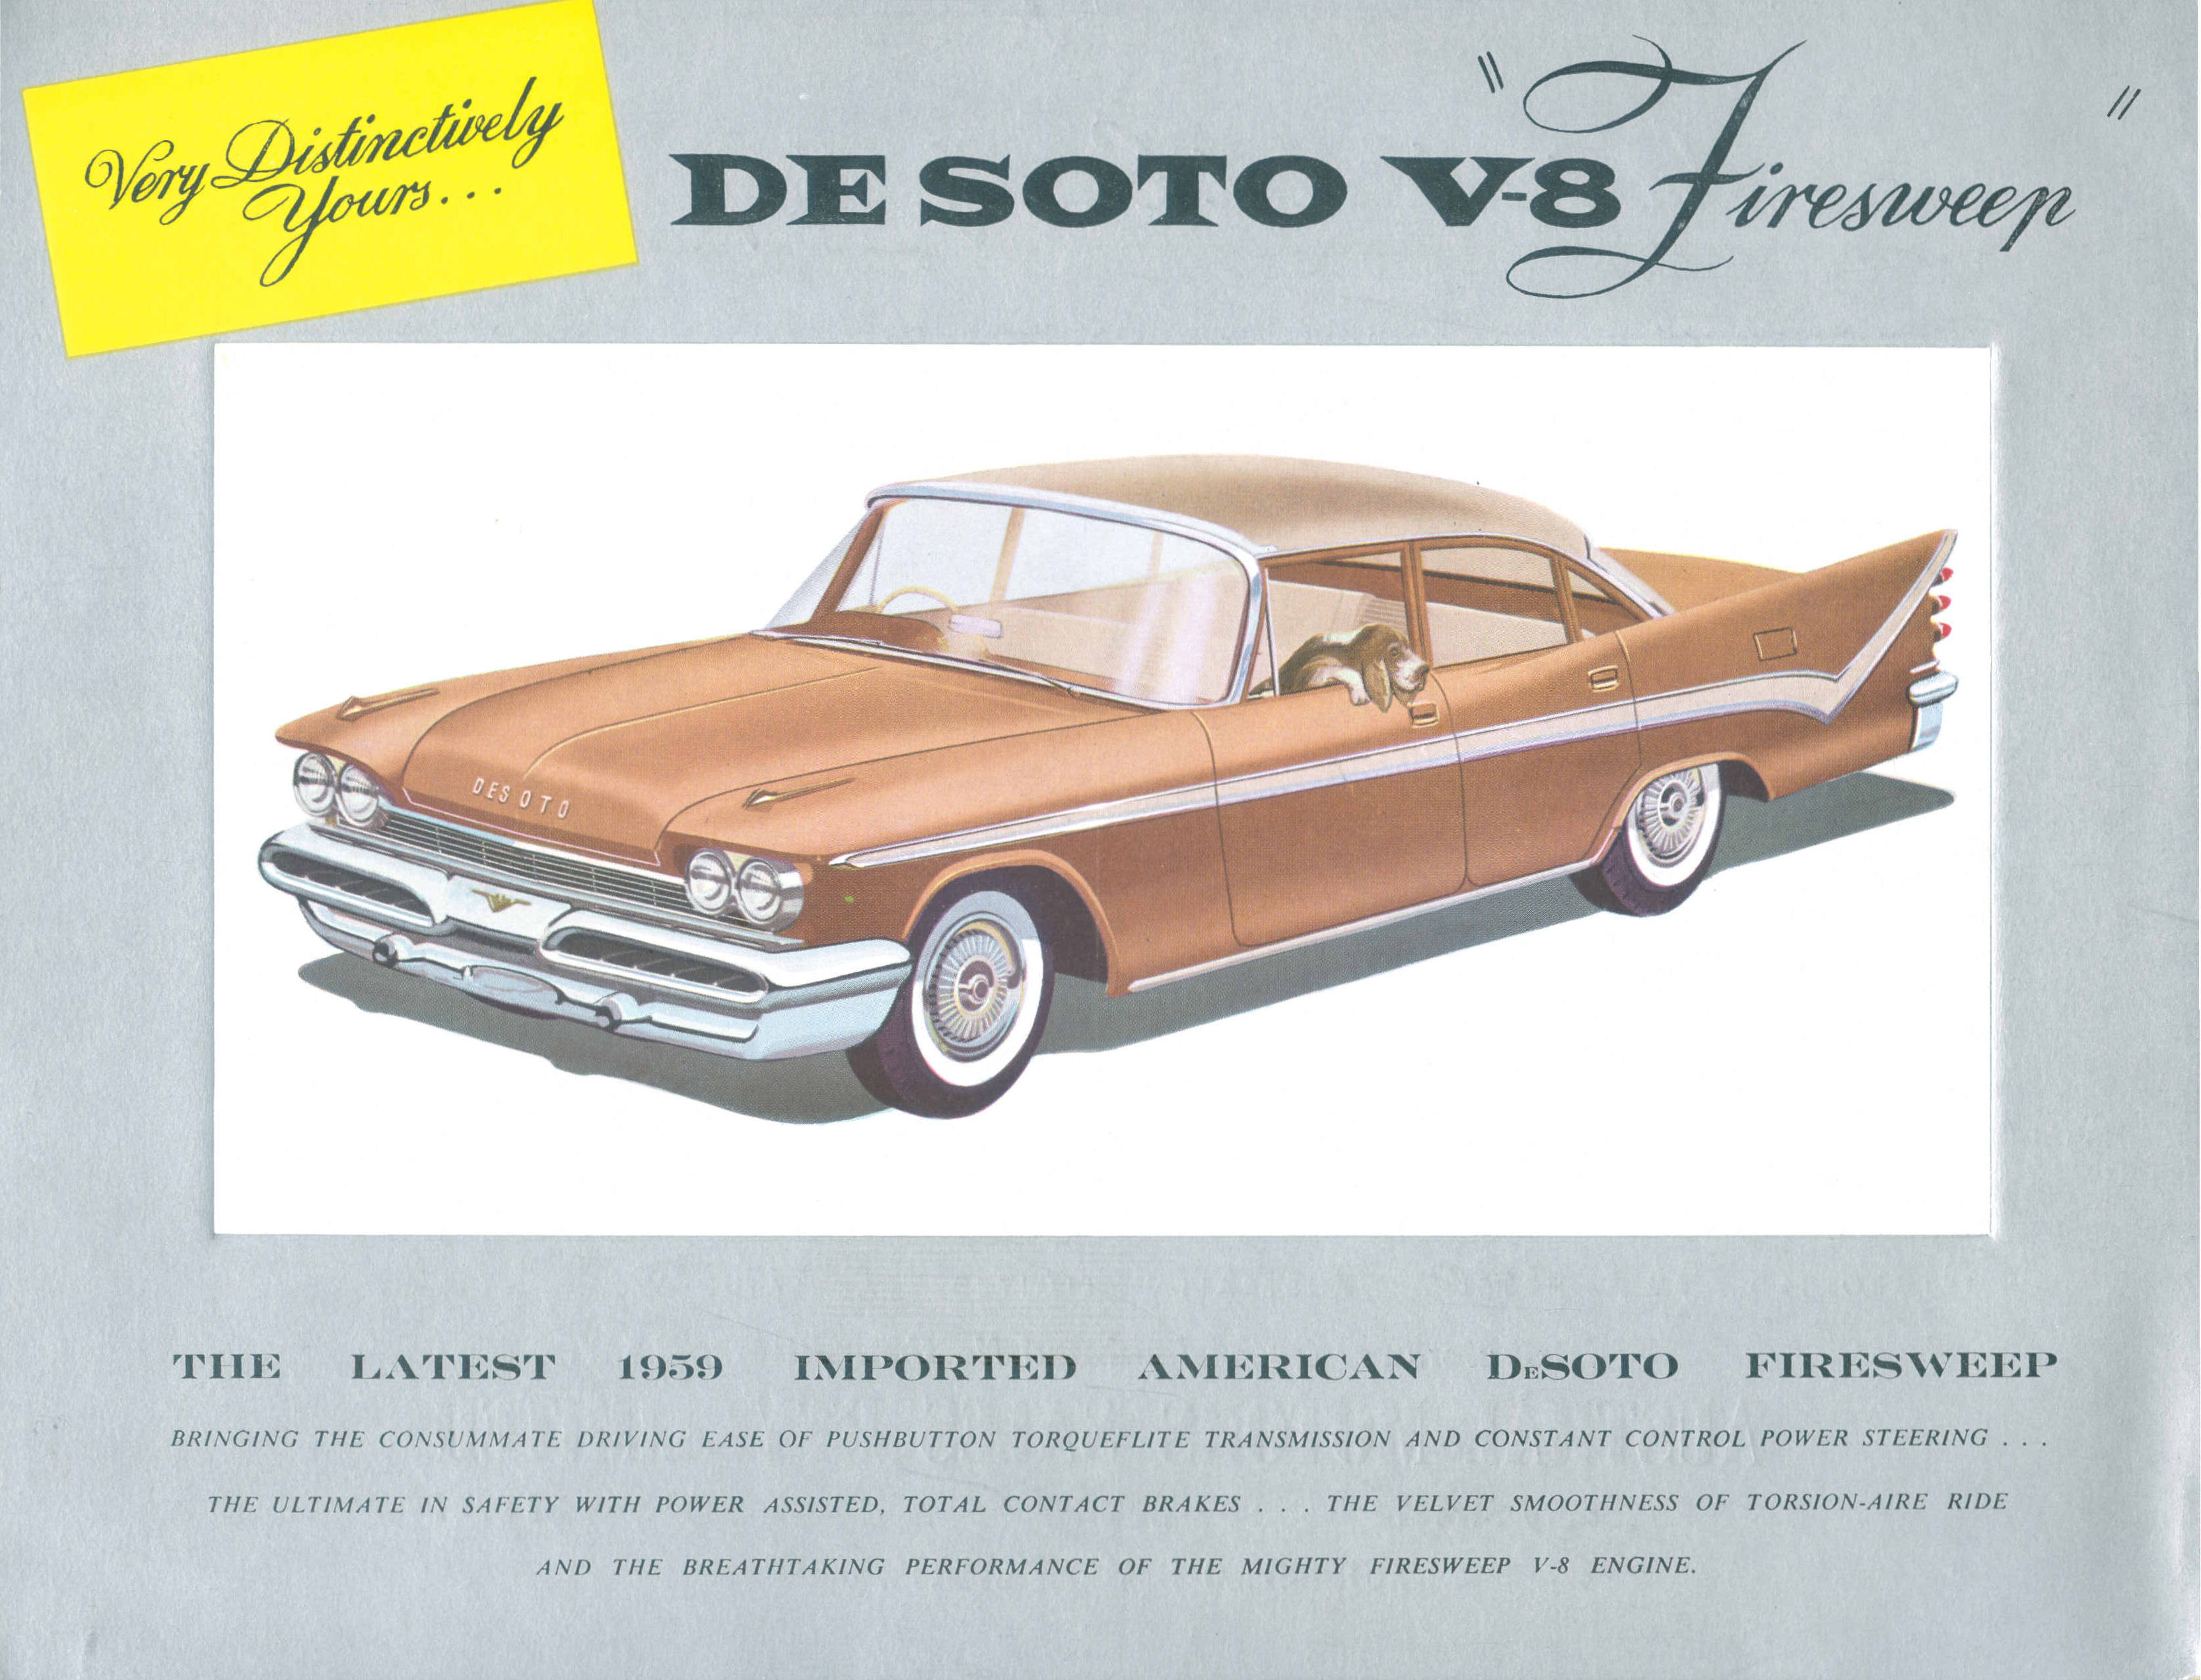 1959 DeSoto Folder (Aus)-01